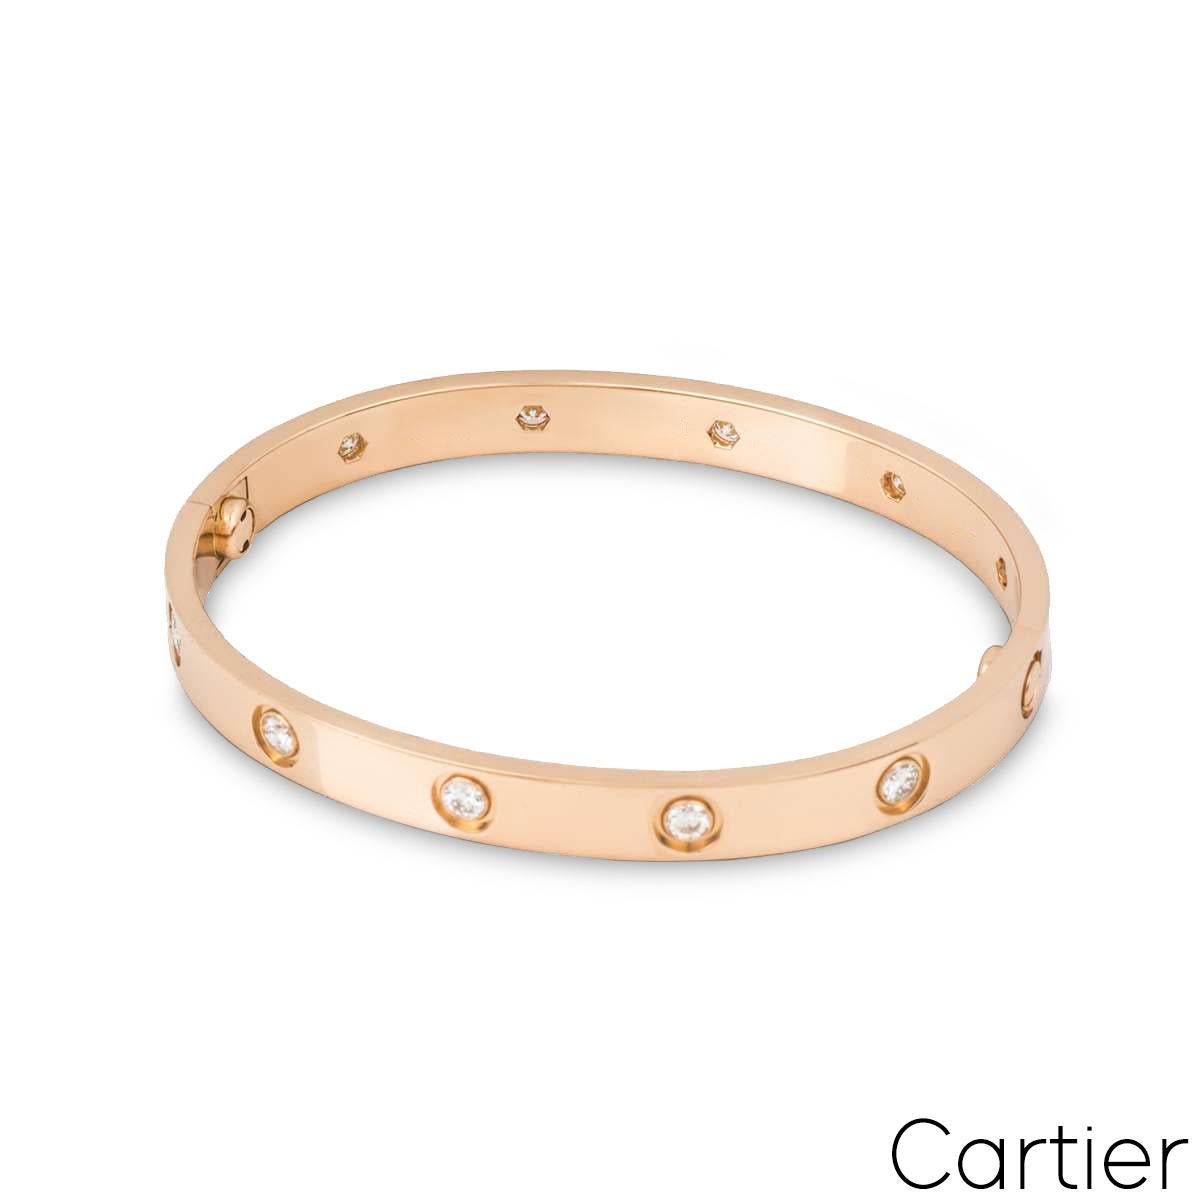 Un bracelet en or rose 18 carats plein diamant de Cartier de la collection Love. Le bracelet est serti de 10 diamants ronds de taille brillant circulant sur le bord extérieur dans un serti rubover pour un total de 0,96ct. Le bracelet est une taille